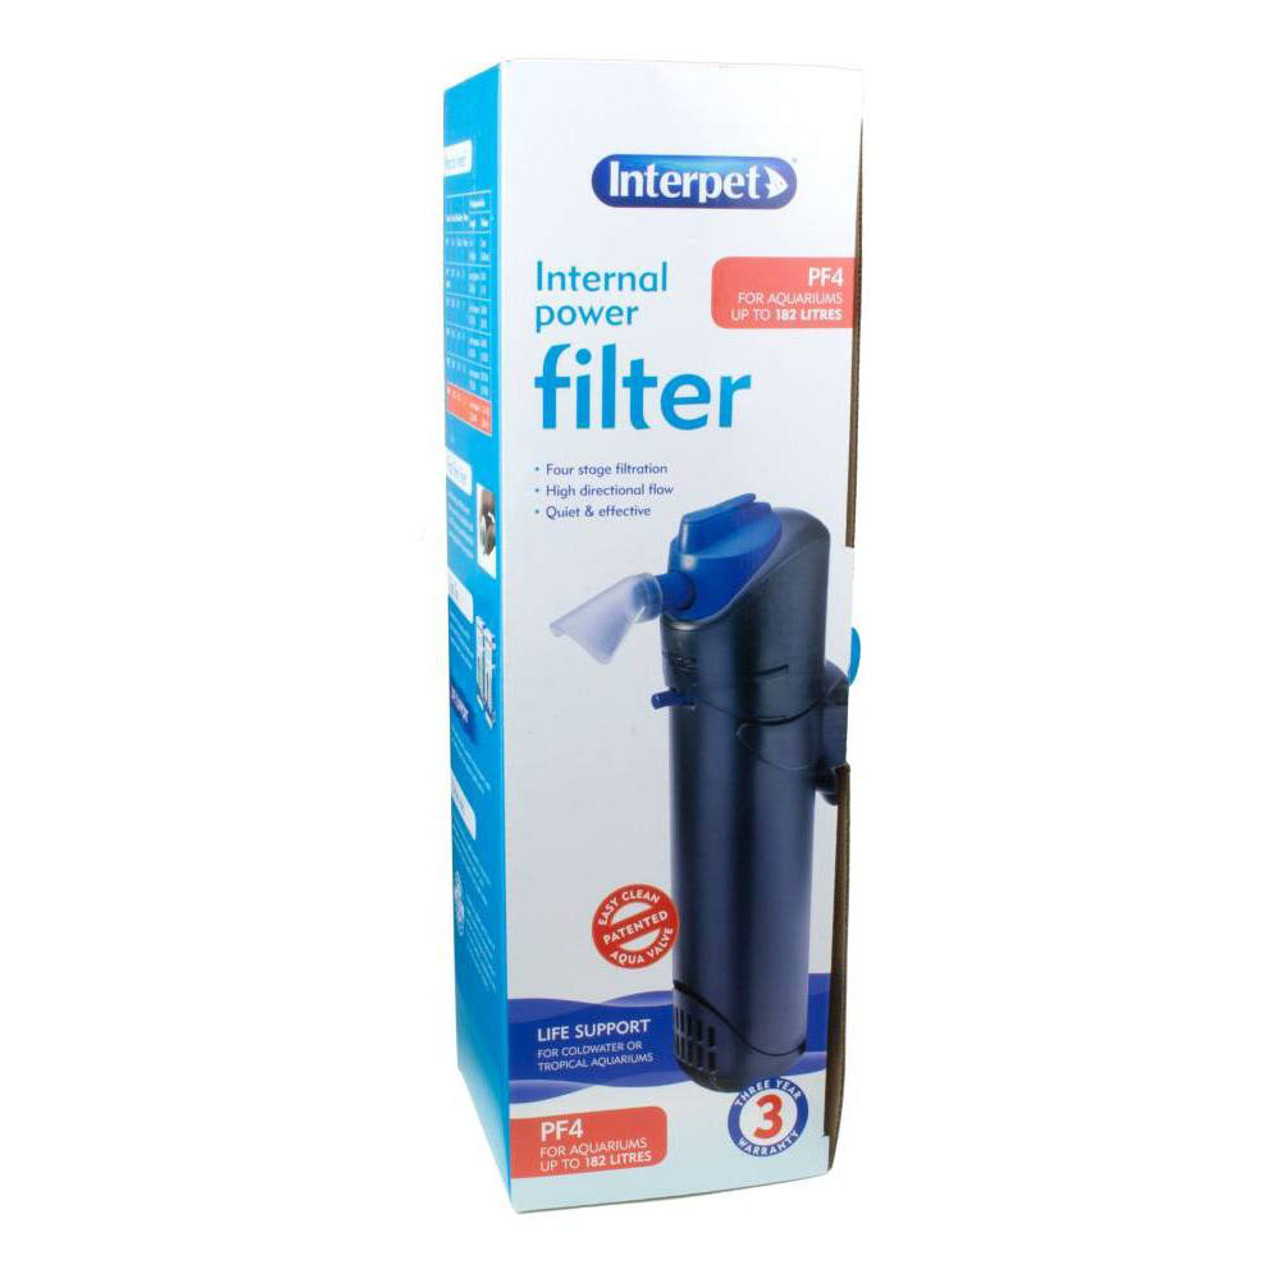 Interpet PF4 Filter